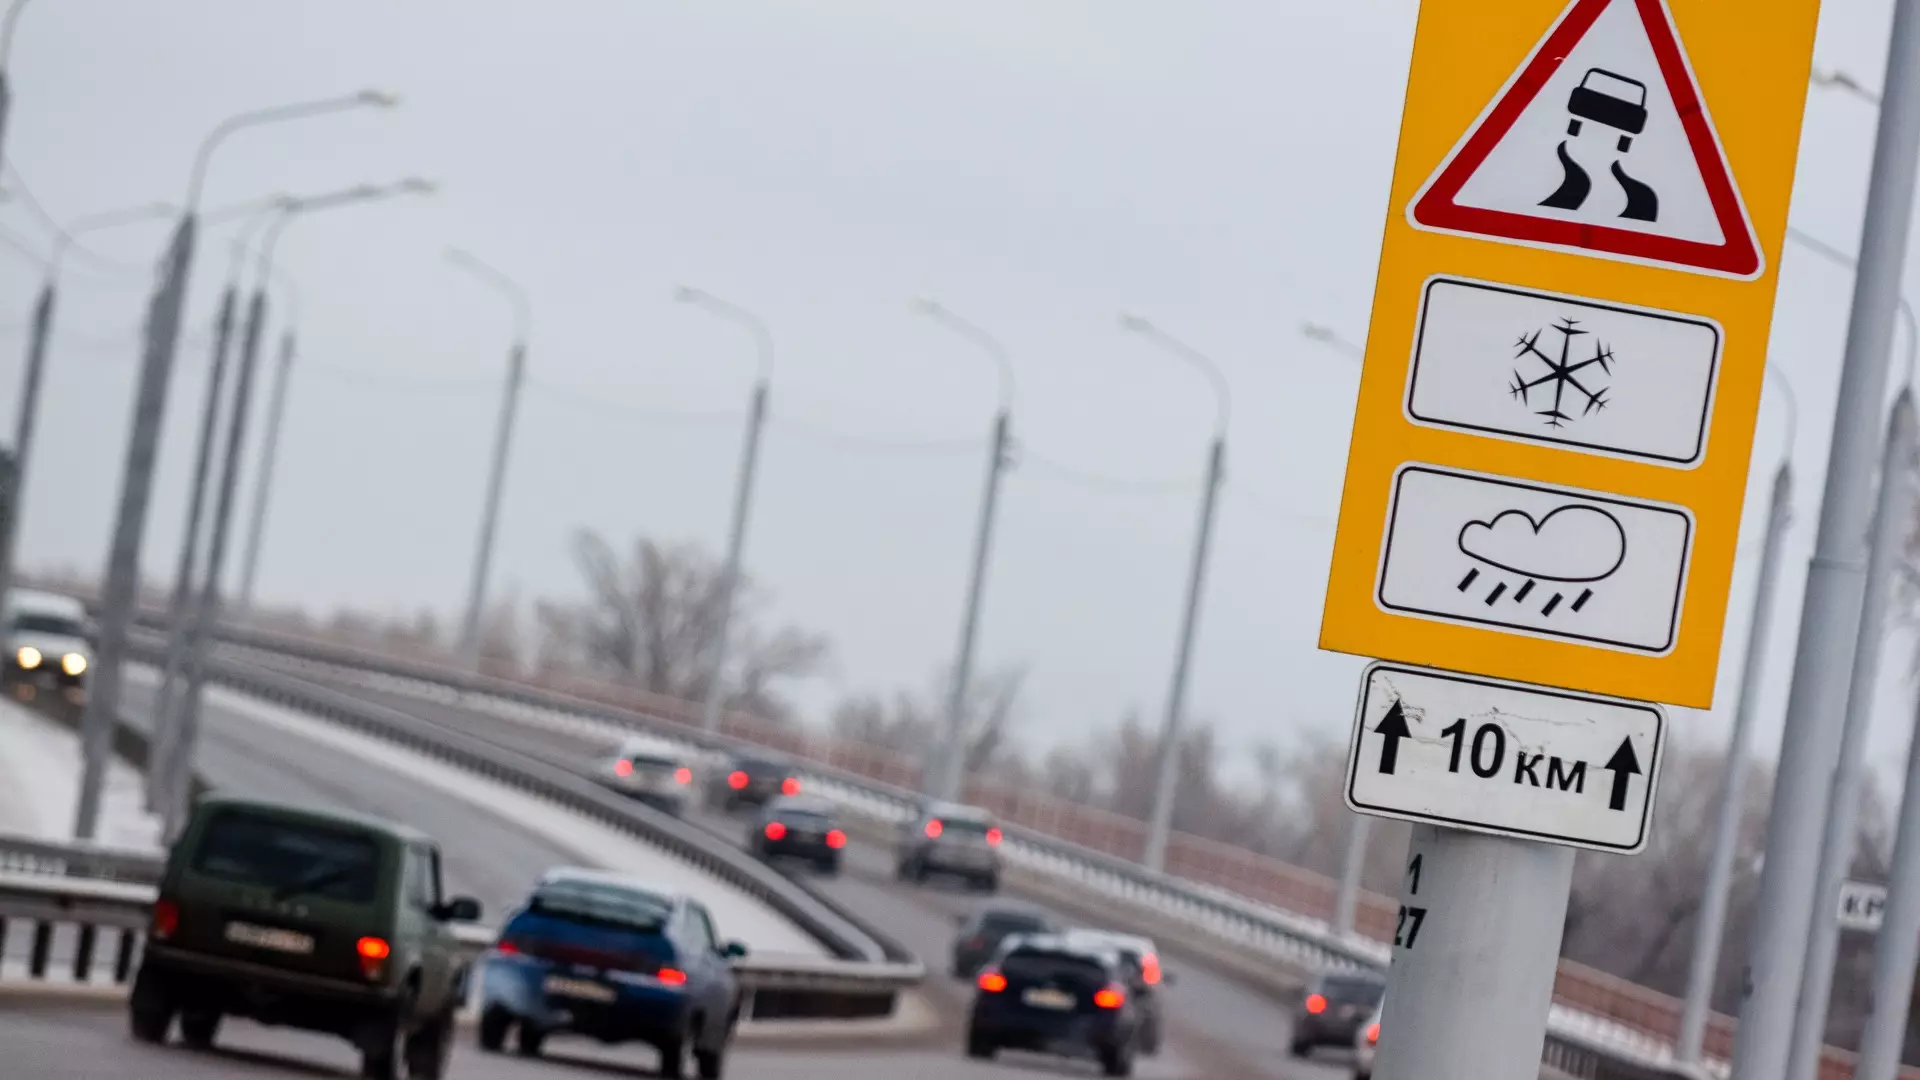 В ХМАО ввели ограничение скорости на автодорогах из-за гололеда